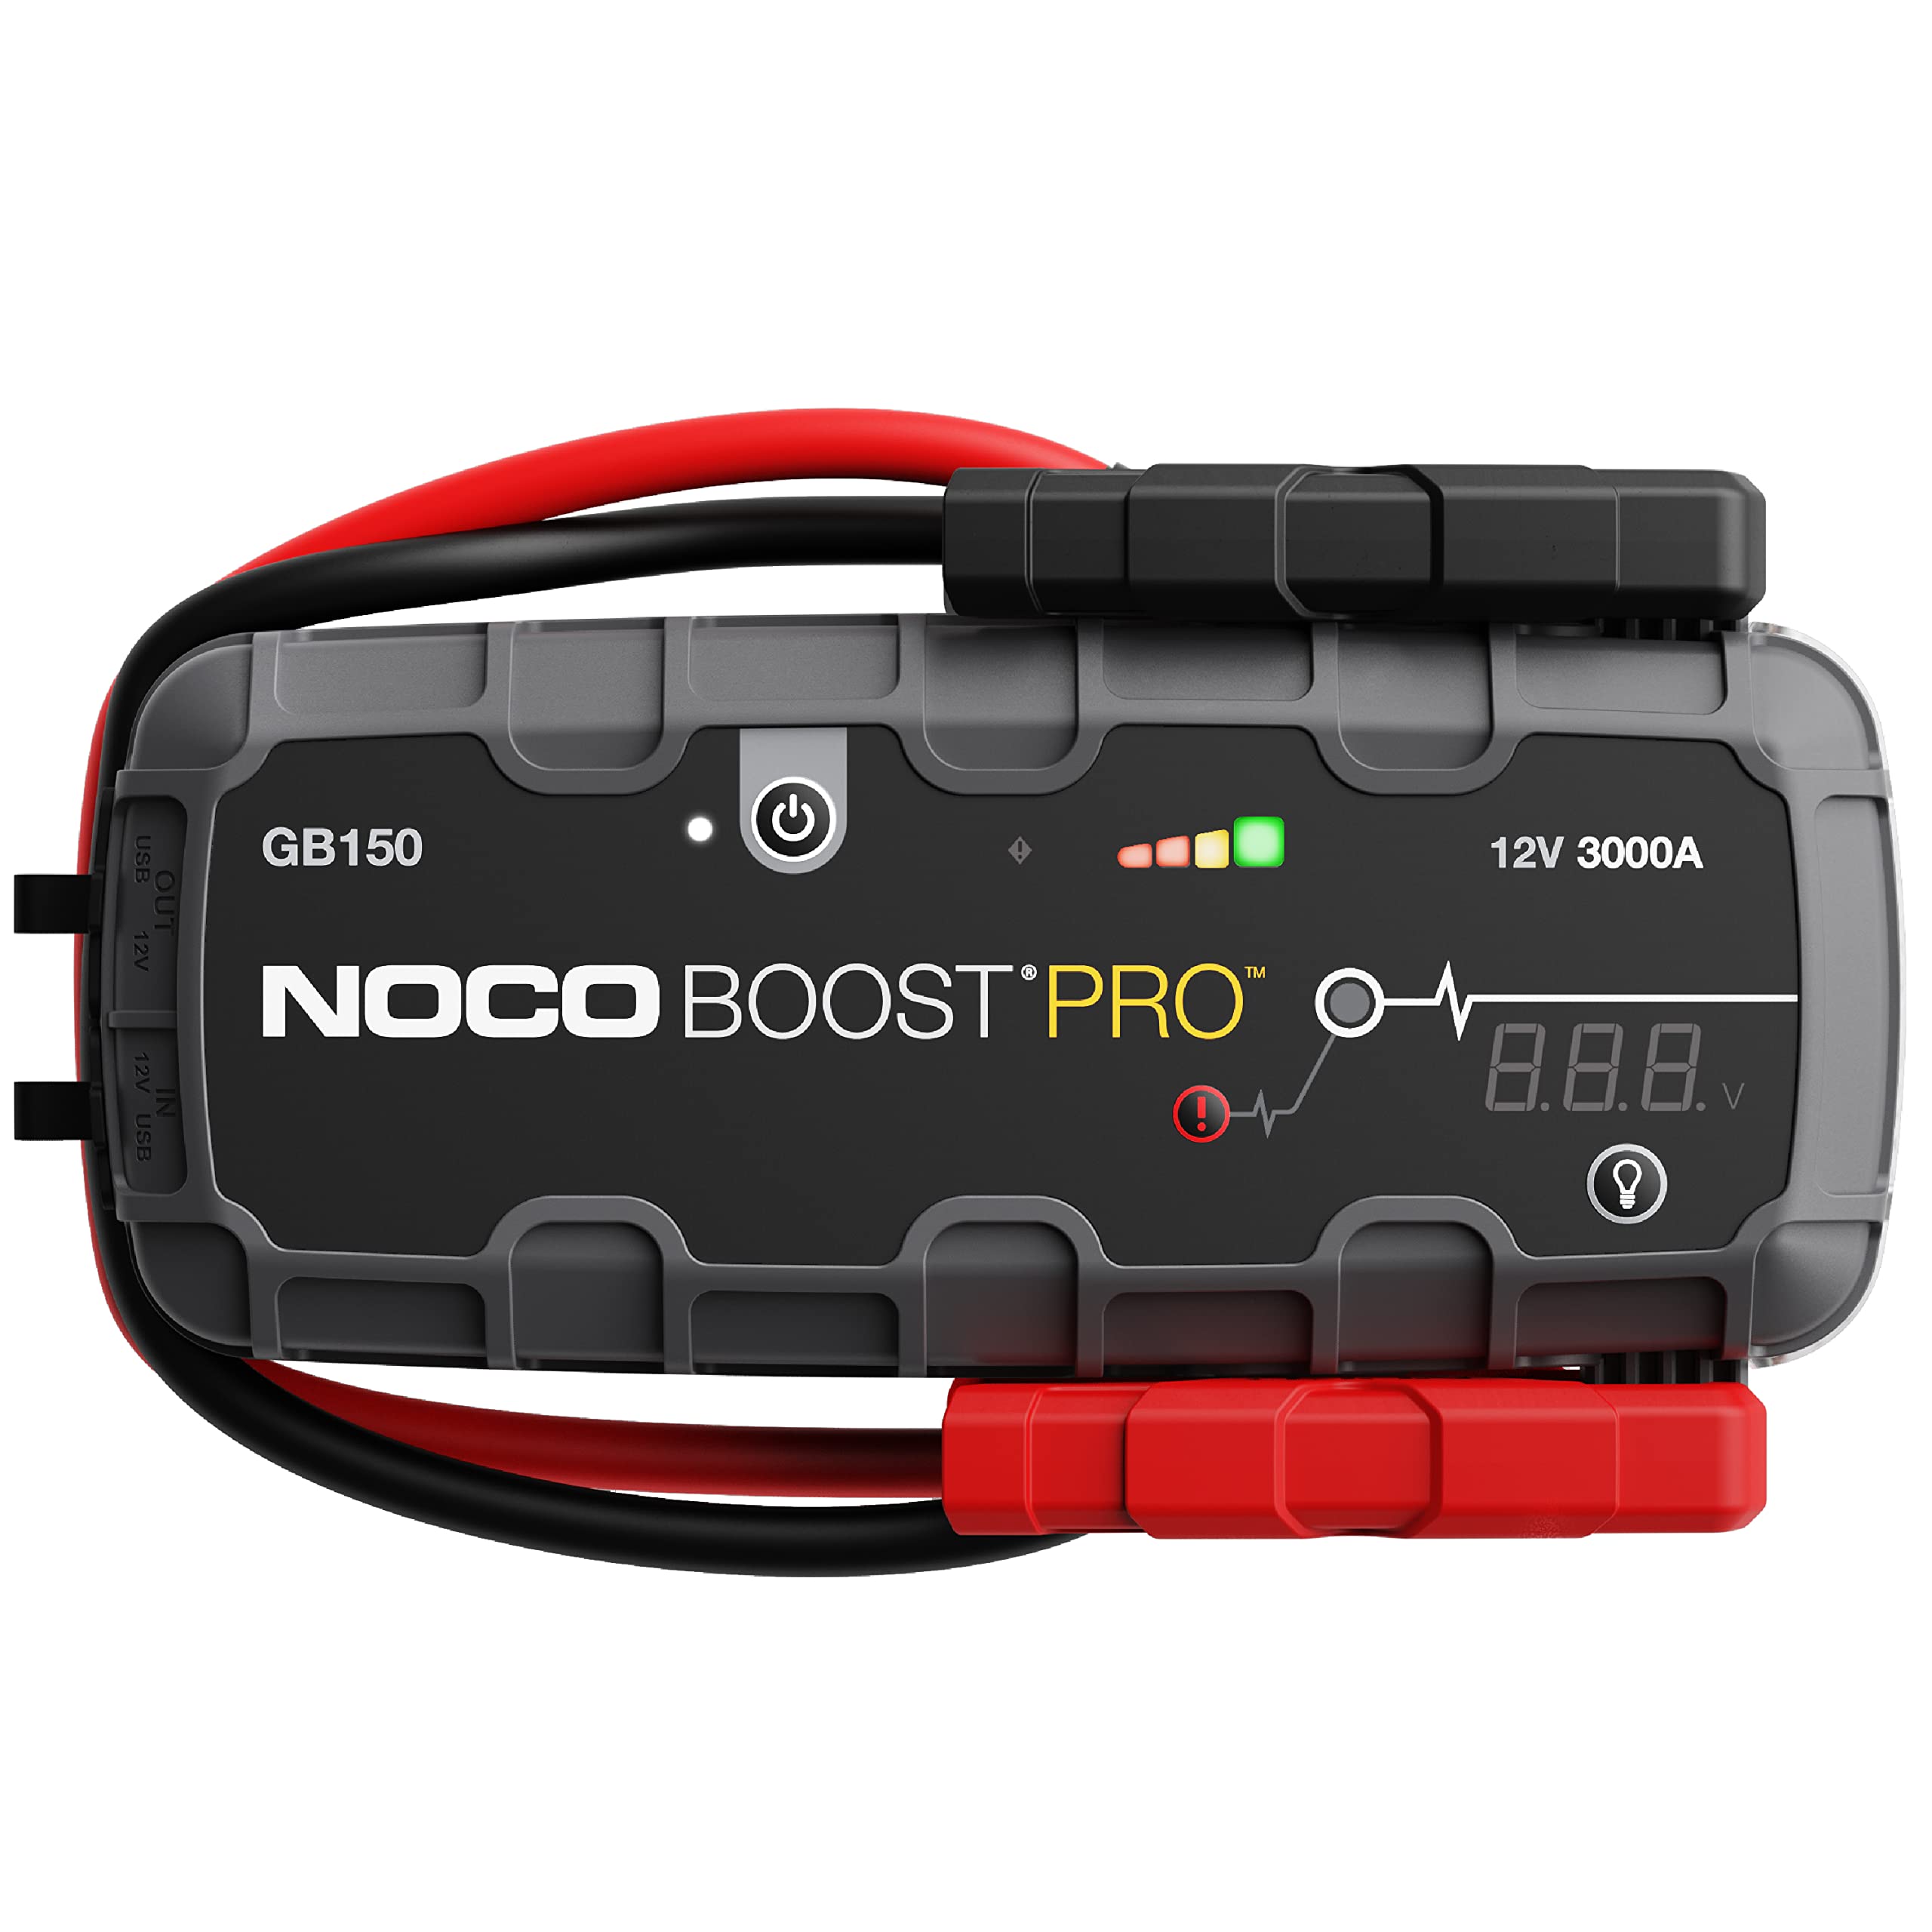 NOCO Boost Pro GB150 3000 安培 12 伏超安全锂应急启动箱、汽车电池升压器包、便携式移动电源充电器以及适用于最多 9 升汽油和 7 升柴油发动机的跨接电缆